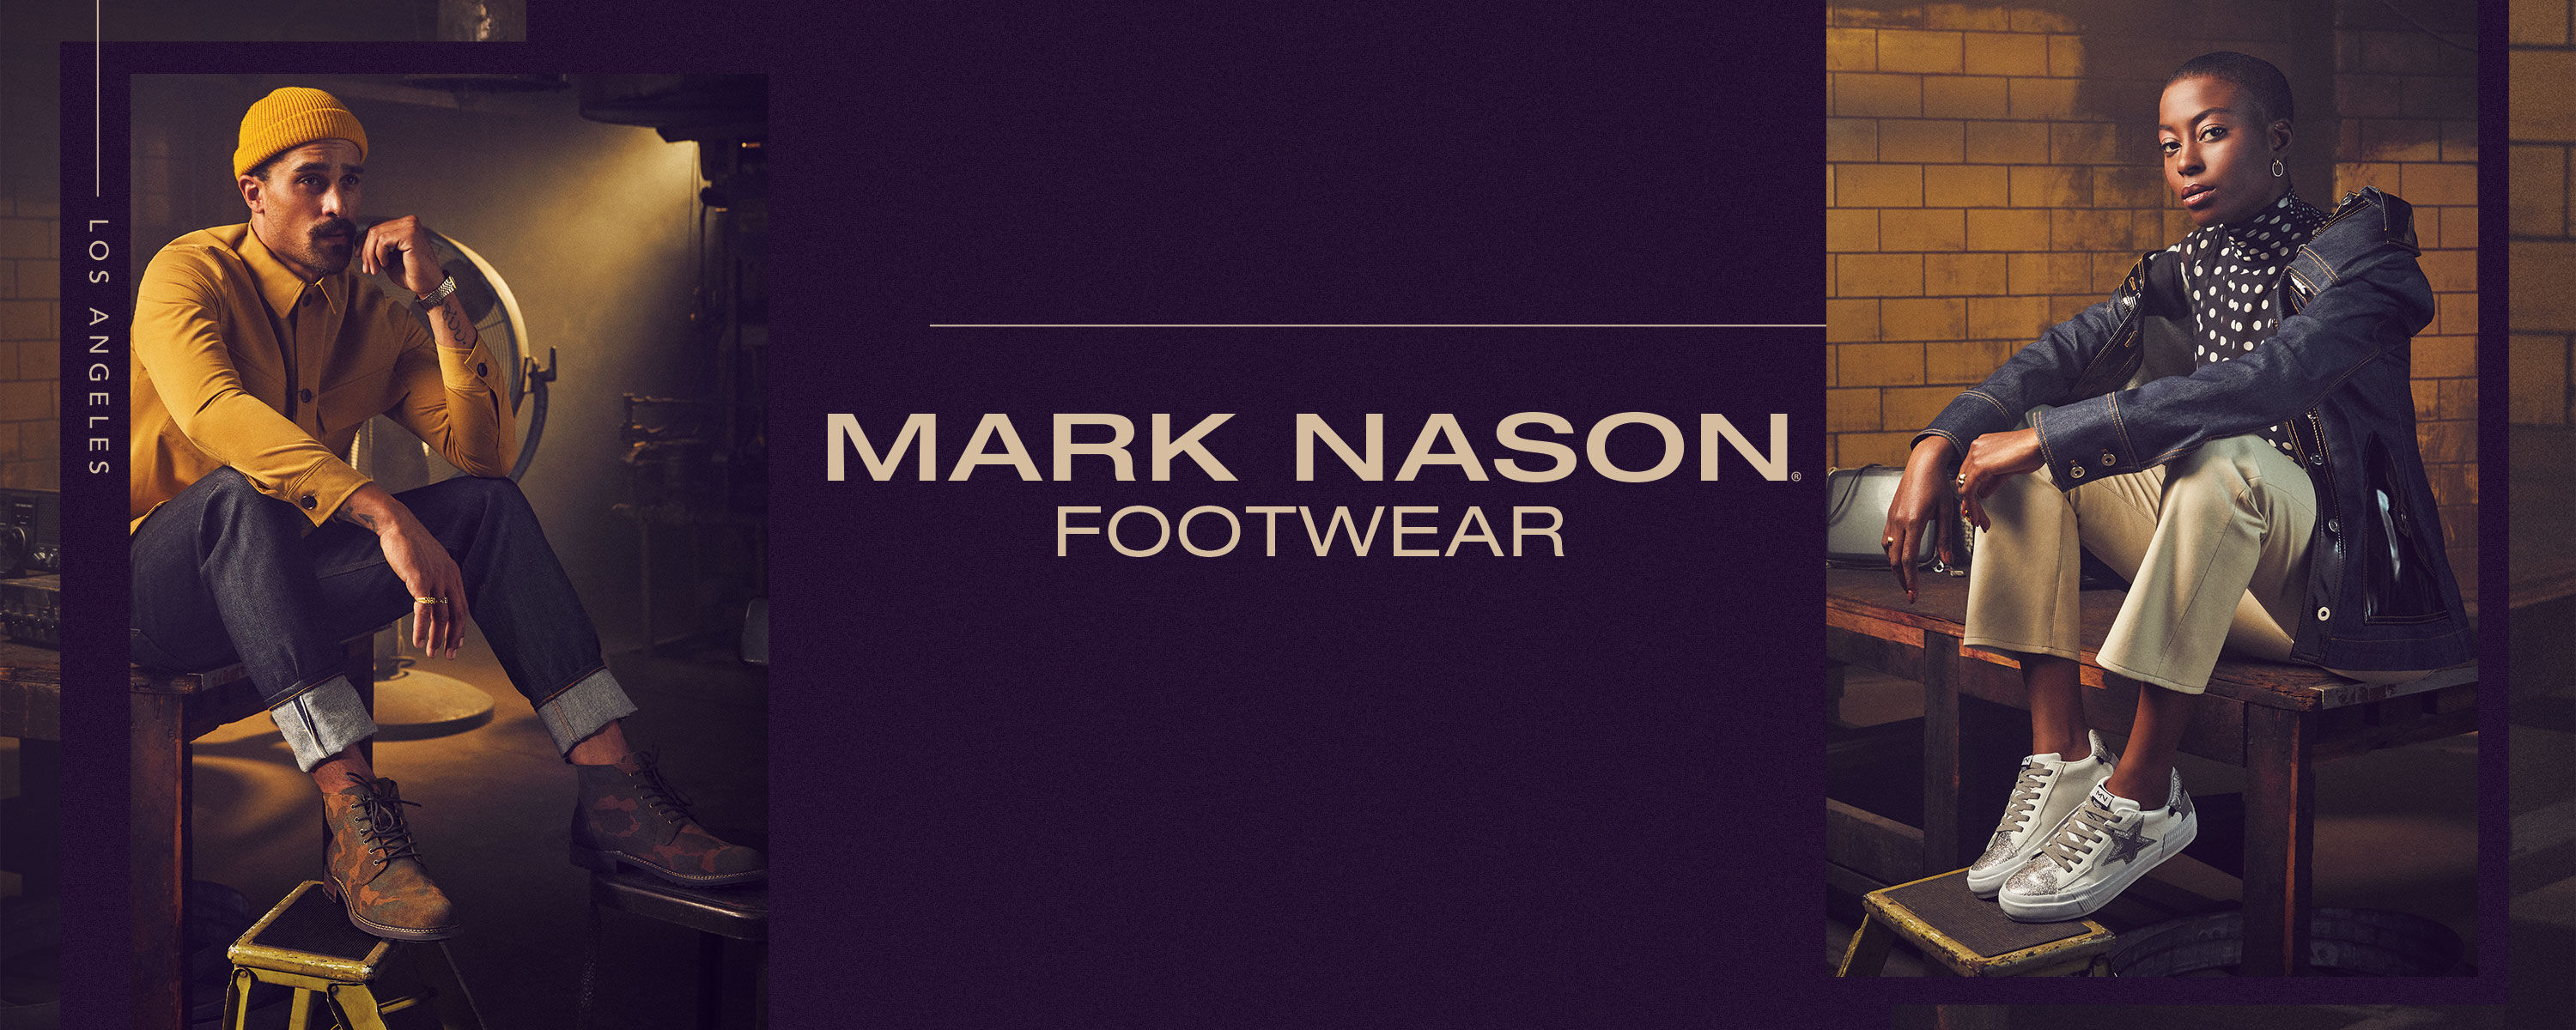 Skechers- Mark Nason Footwear